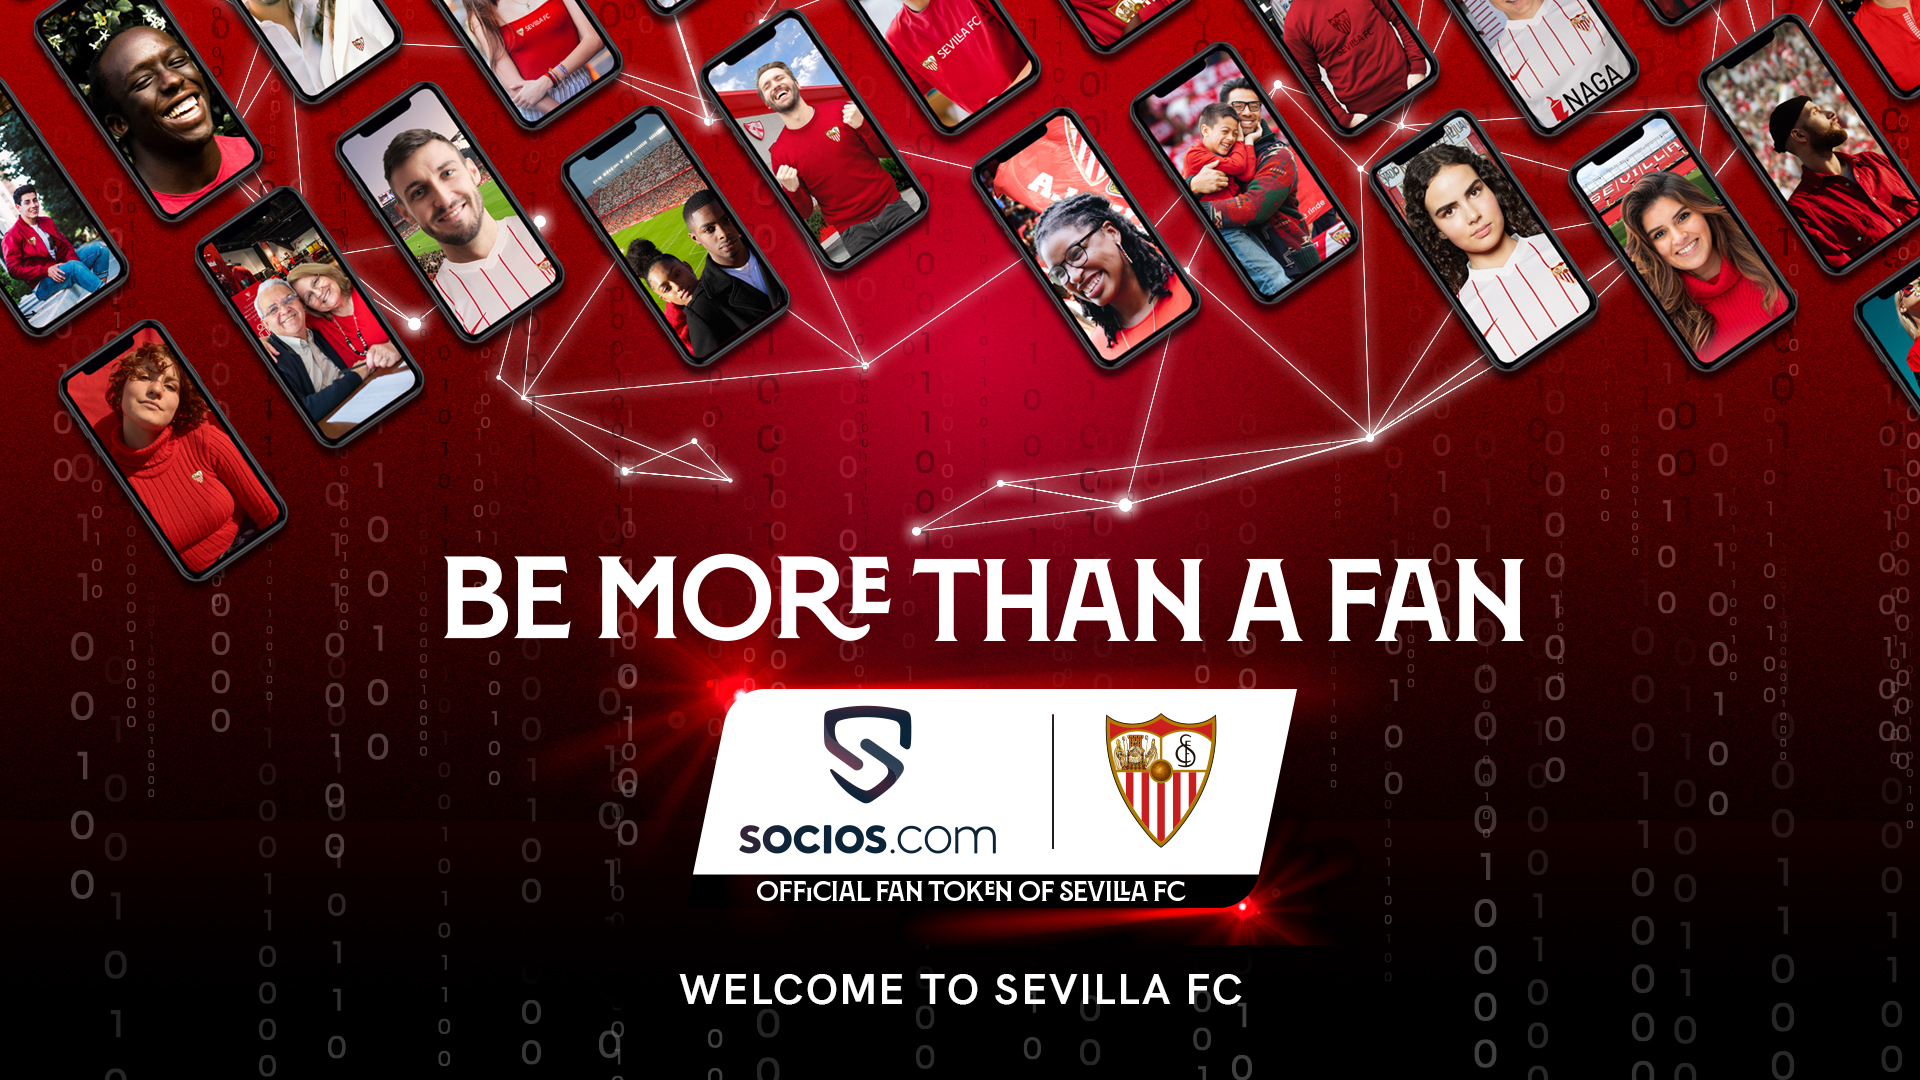 Agreement between Sevilla FC and Socios.com